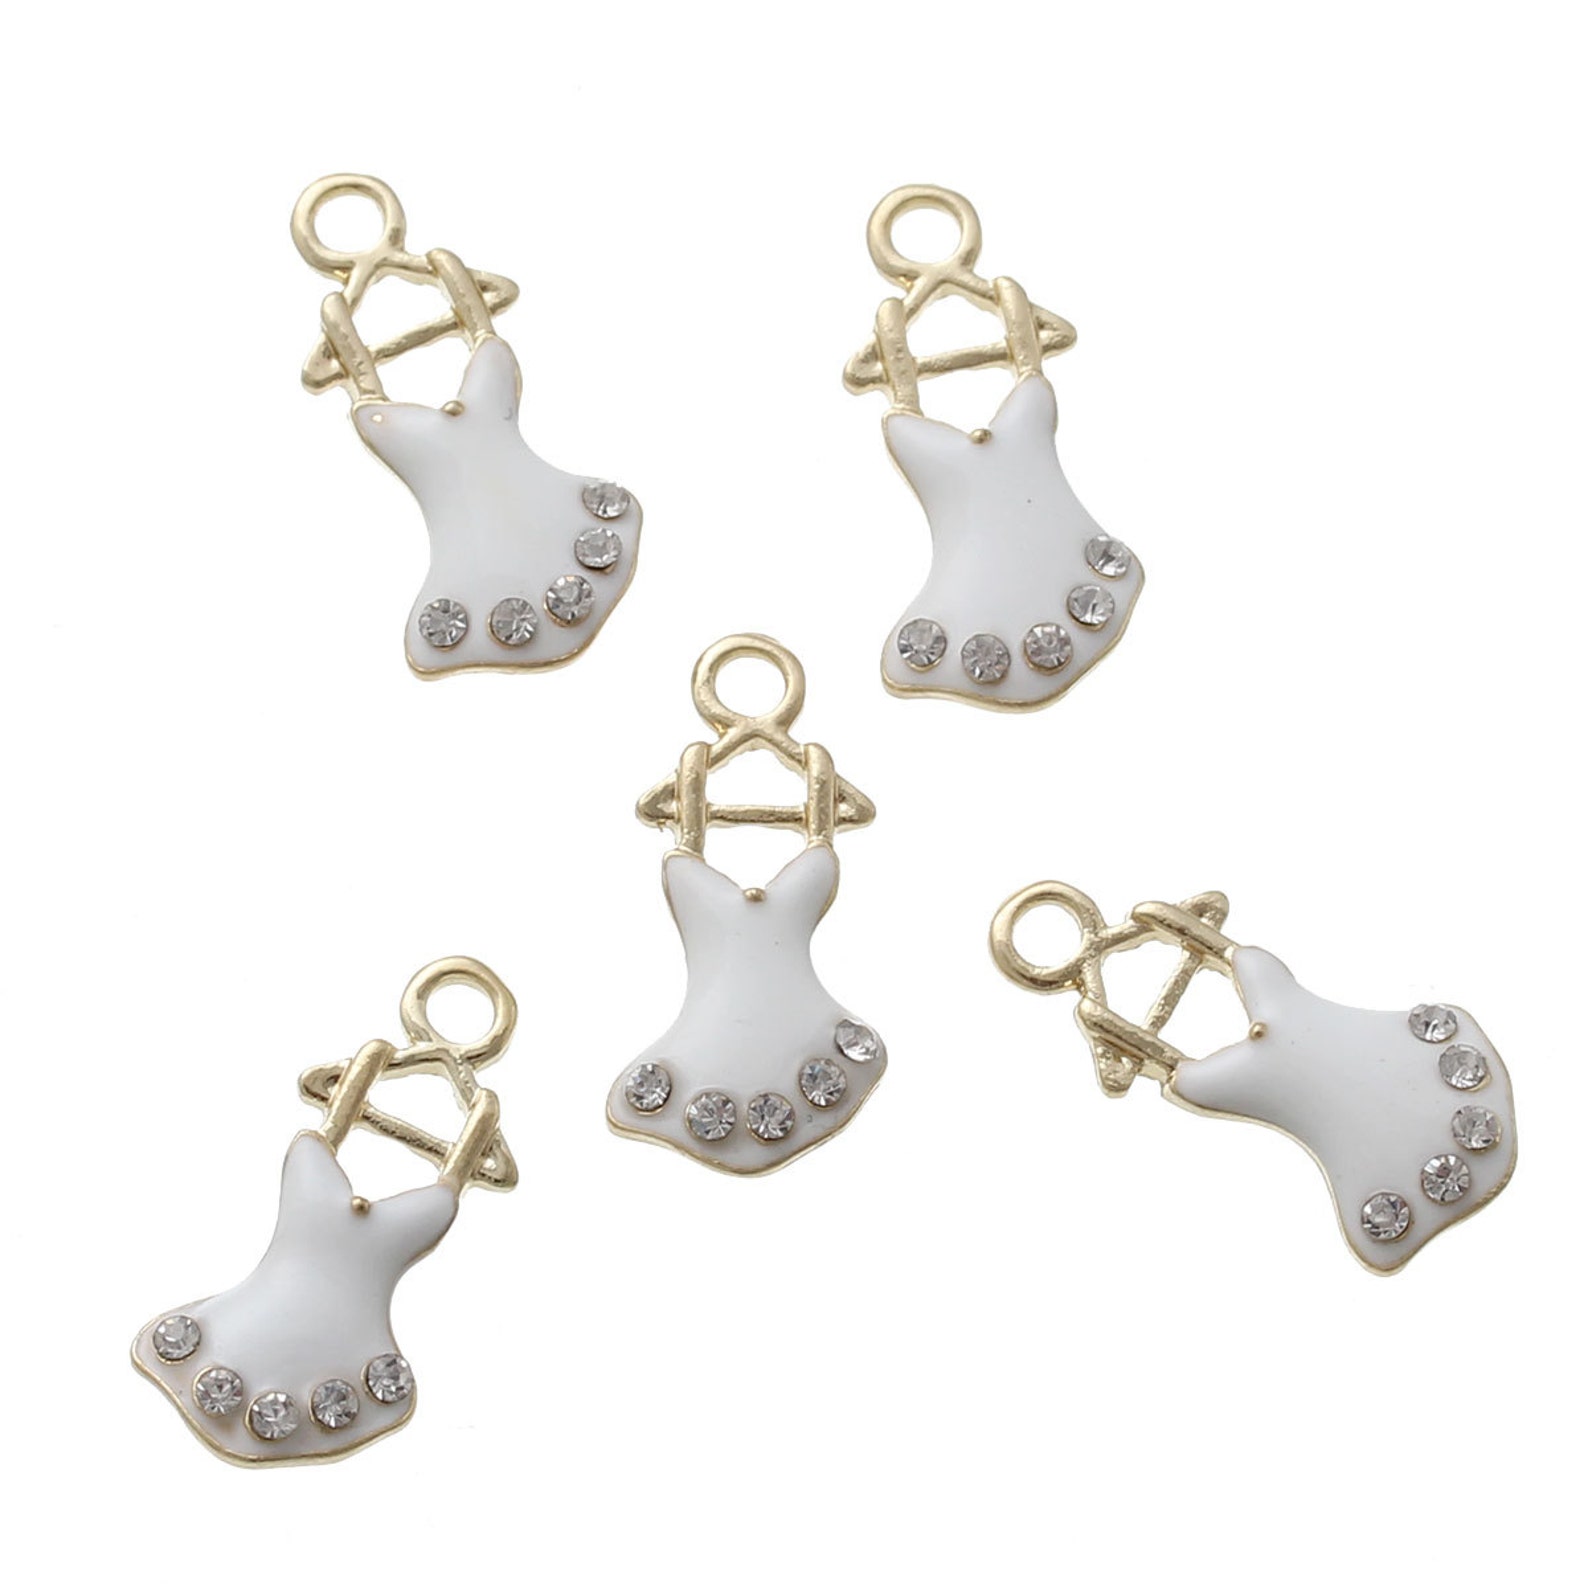 5 rhinestone ballet tutu dress dance charms, white enamel gold tone metal pendants, che0503